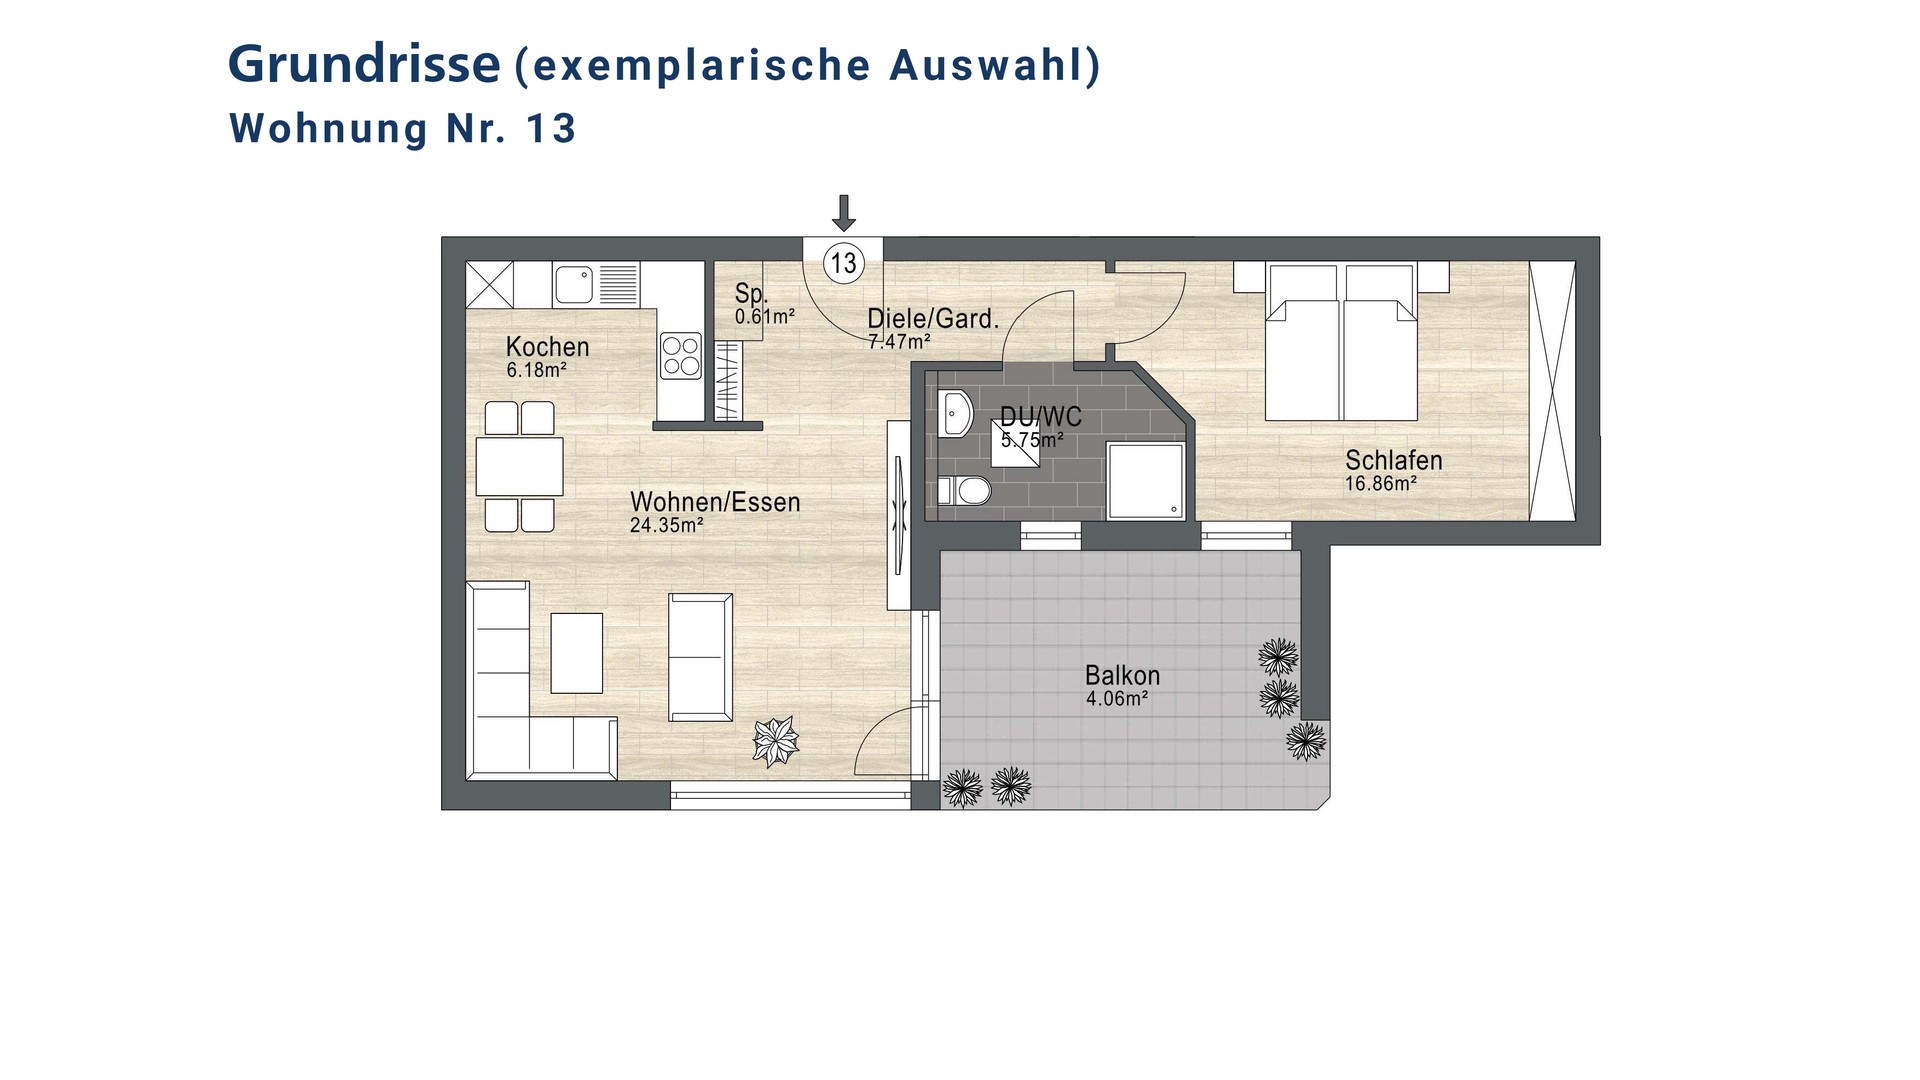 WE-13_Siegburg_Wohnung-kaufen_VR-Immobilien_Bonn-Rhein-Sieg.jpg
				